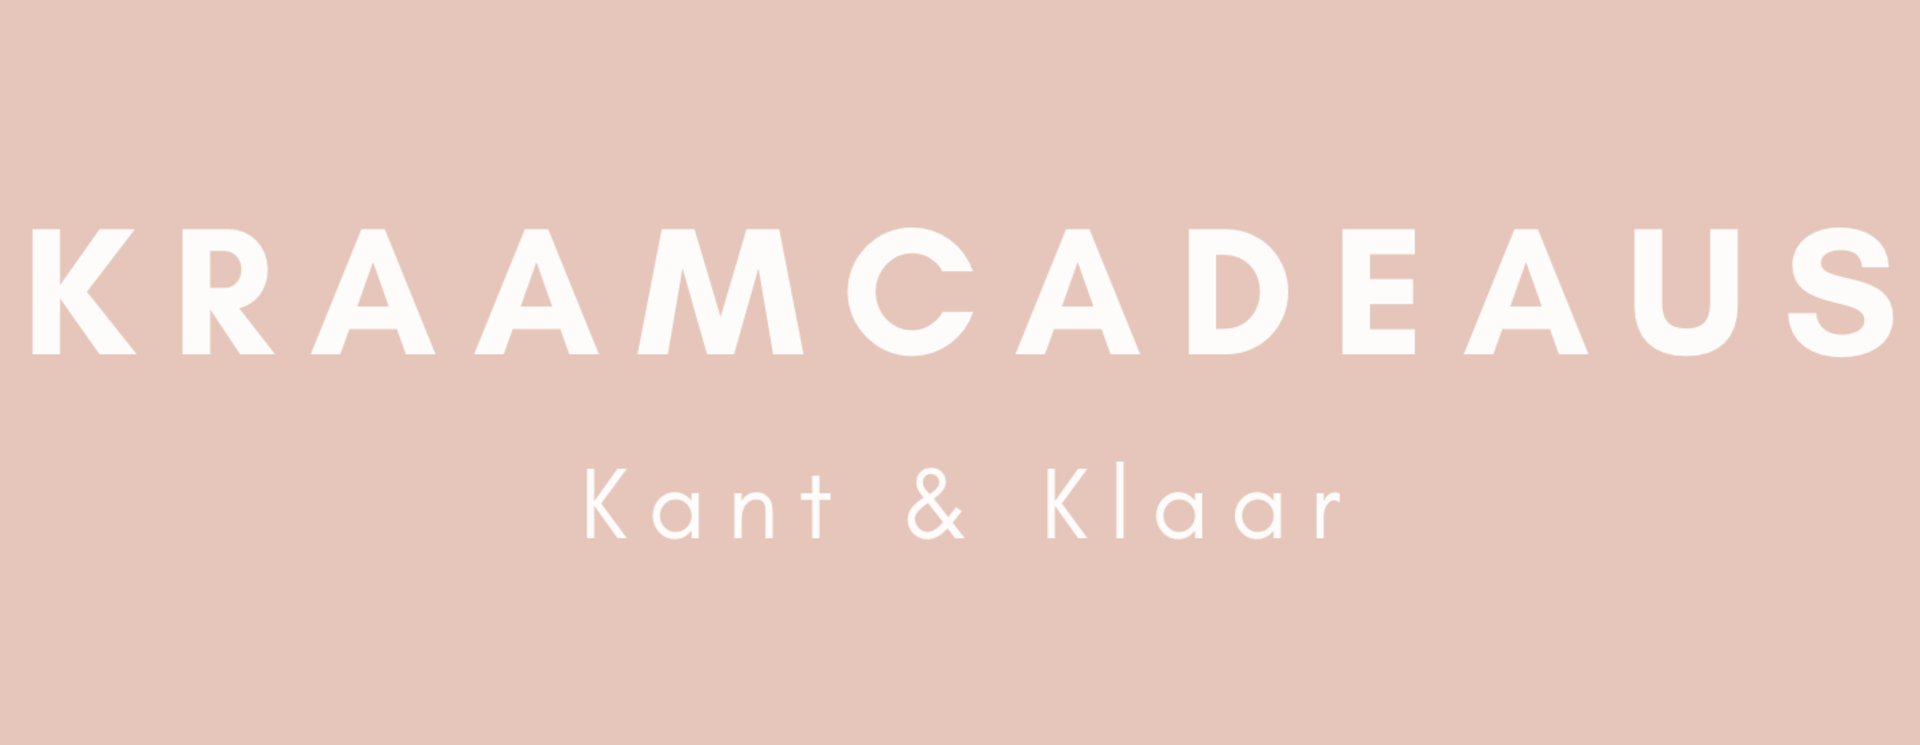 Kant & Klare kraamcadeaus voor iedereen.